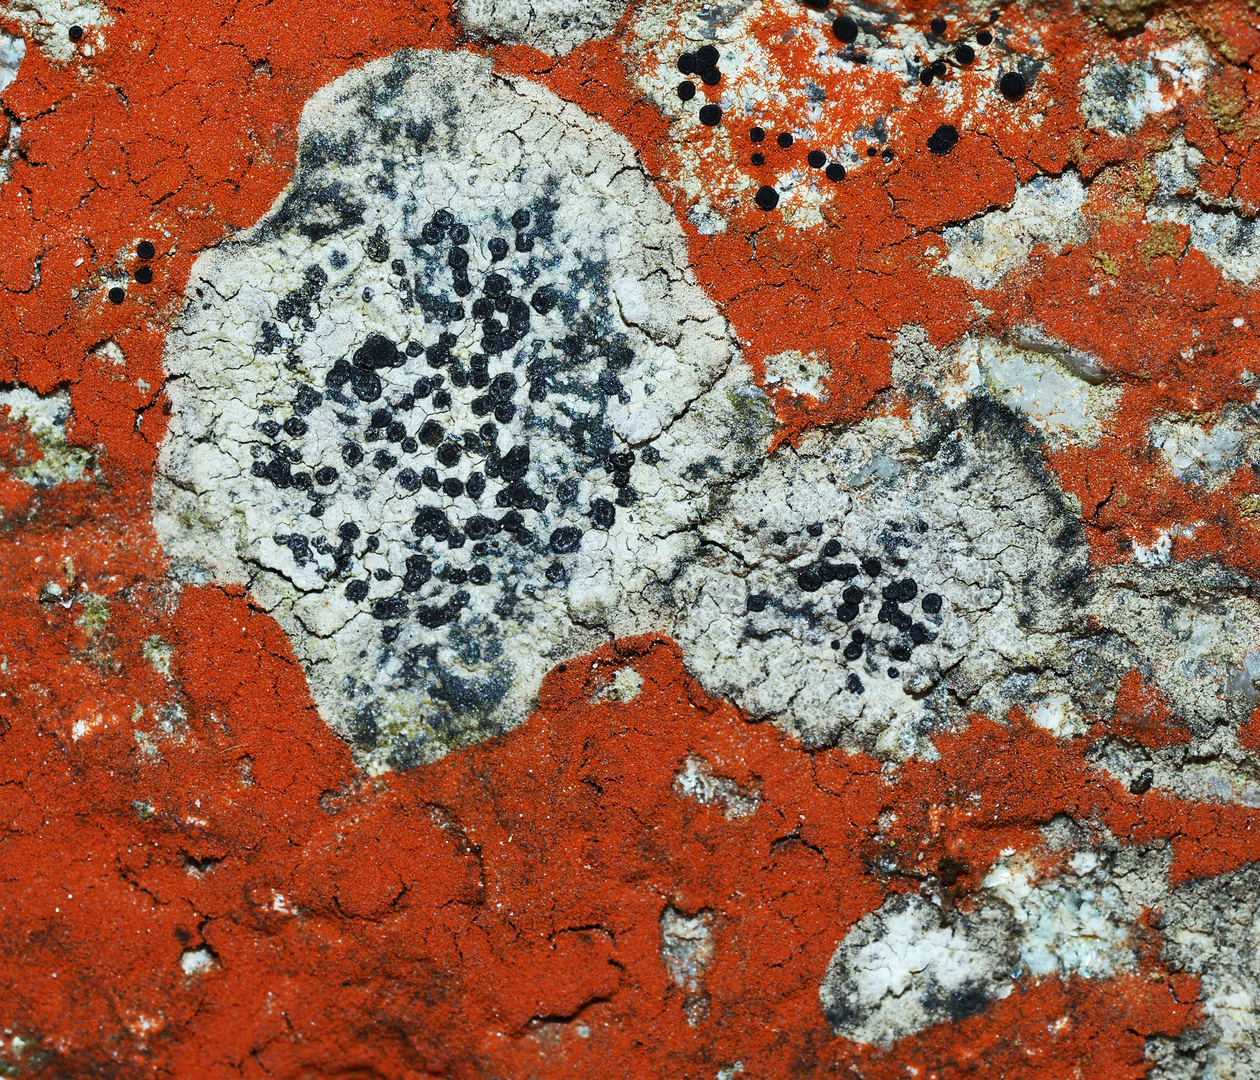 Orange-roter Felsen mit Krustenflechten und Algen! *